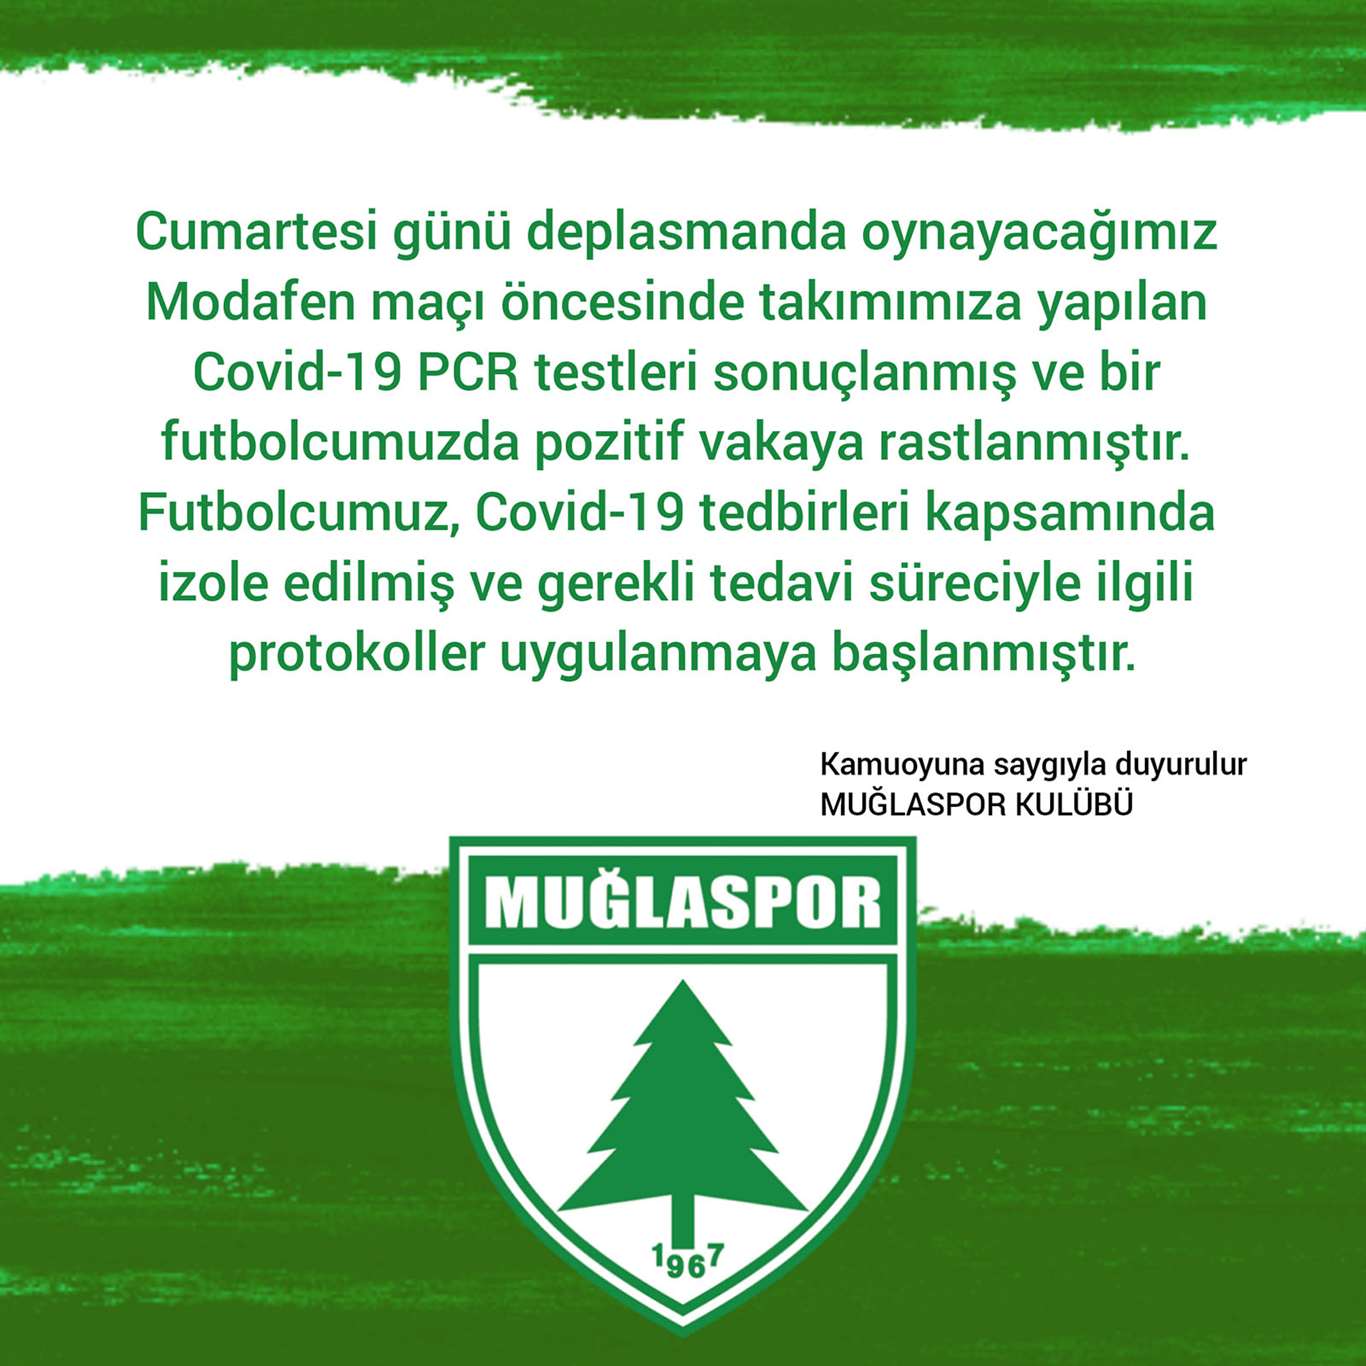 Muğlaspor'da bir futbolcunun testi pozitif çıktı haberi